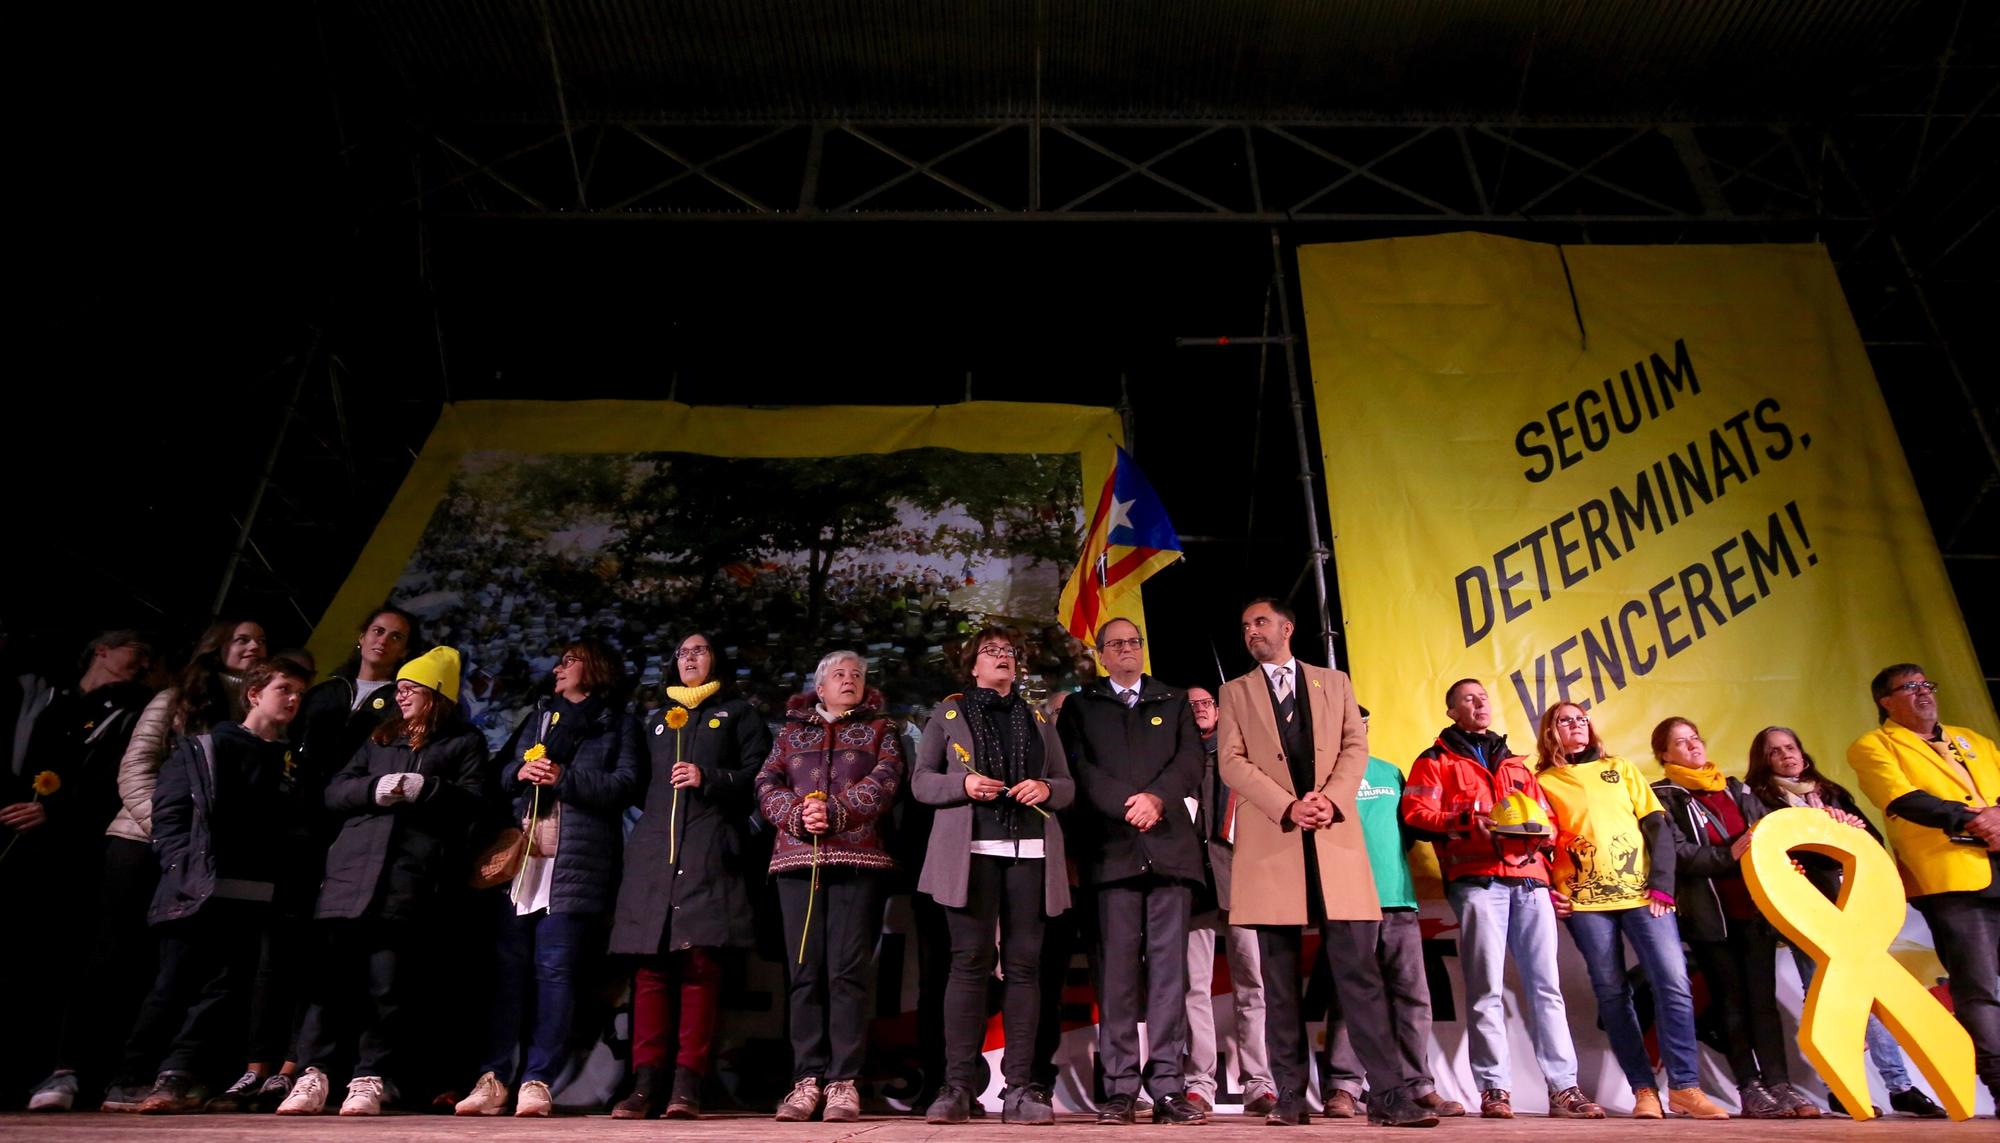 acto secuestro de gobierno catalan